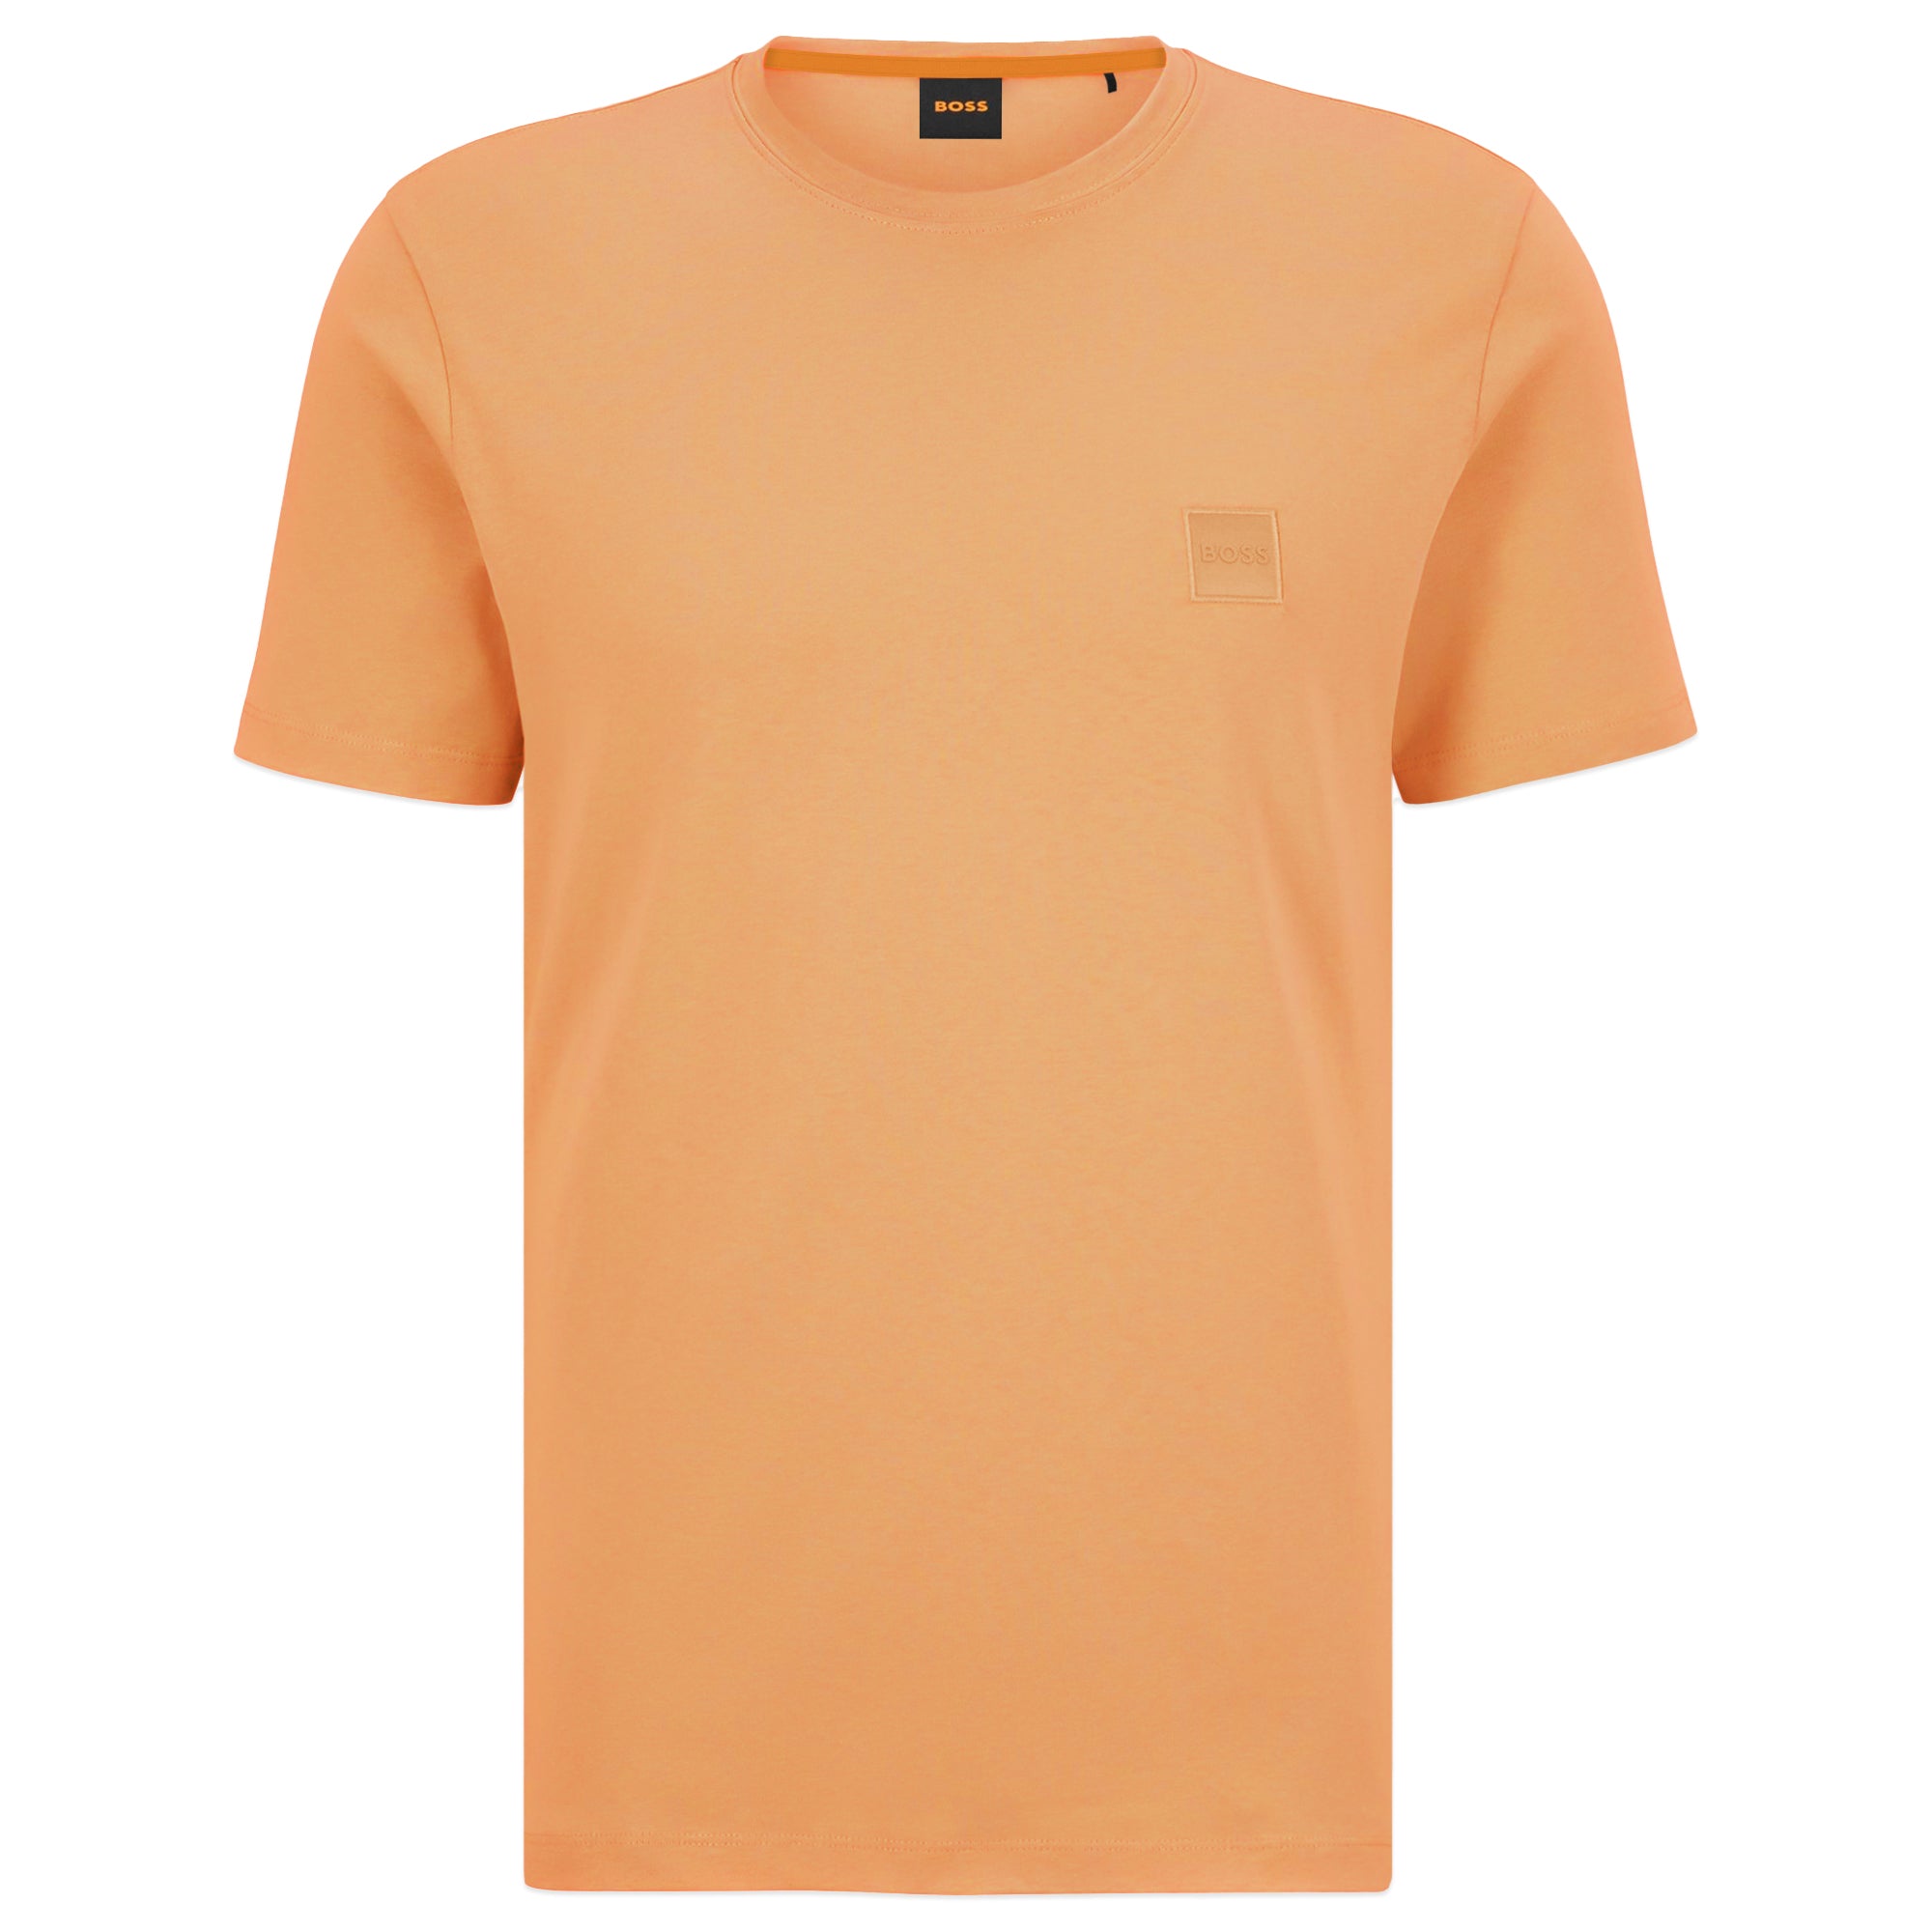 Boss Tales T-Shirt - Bright Orange